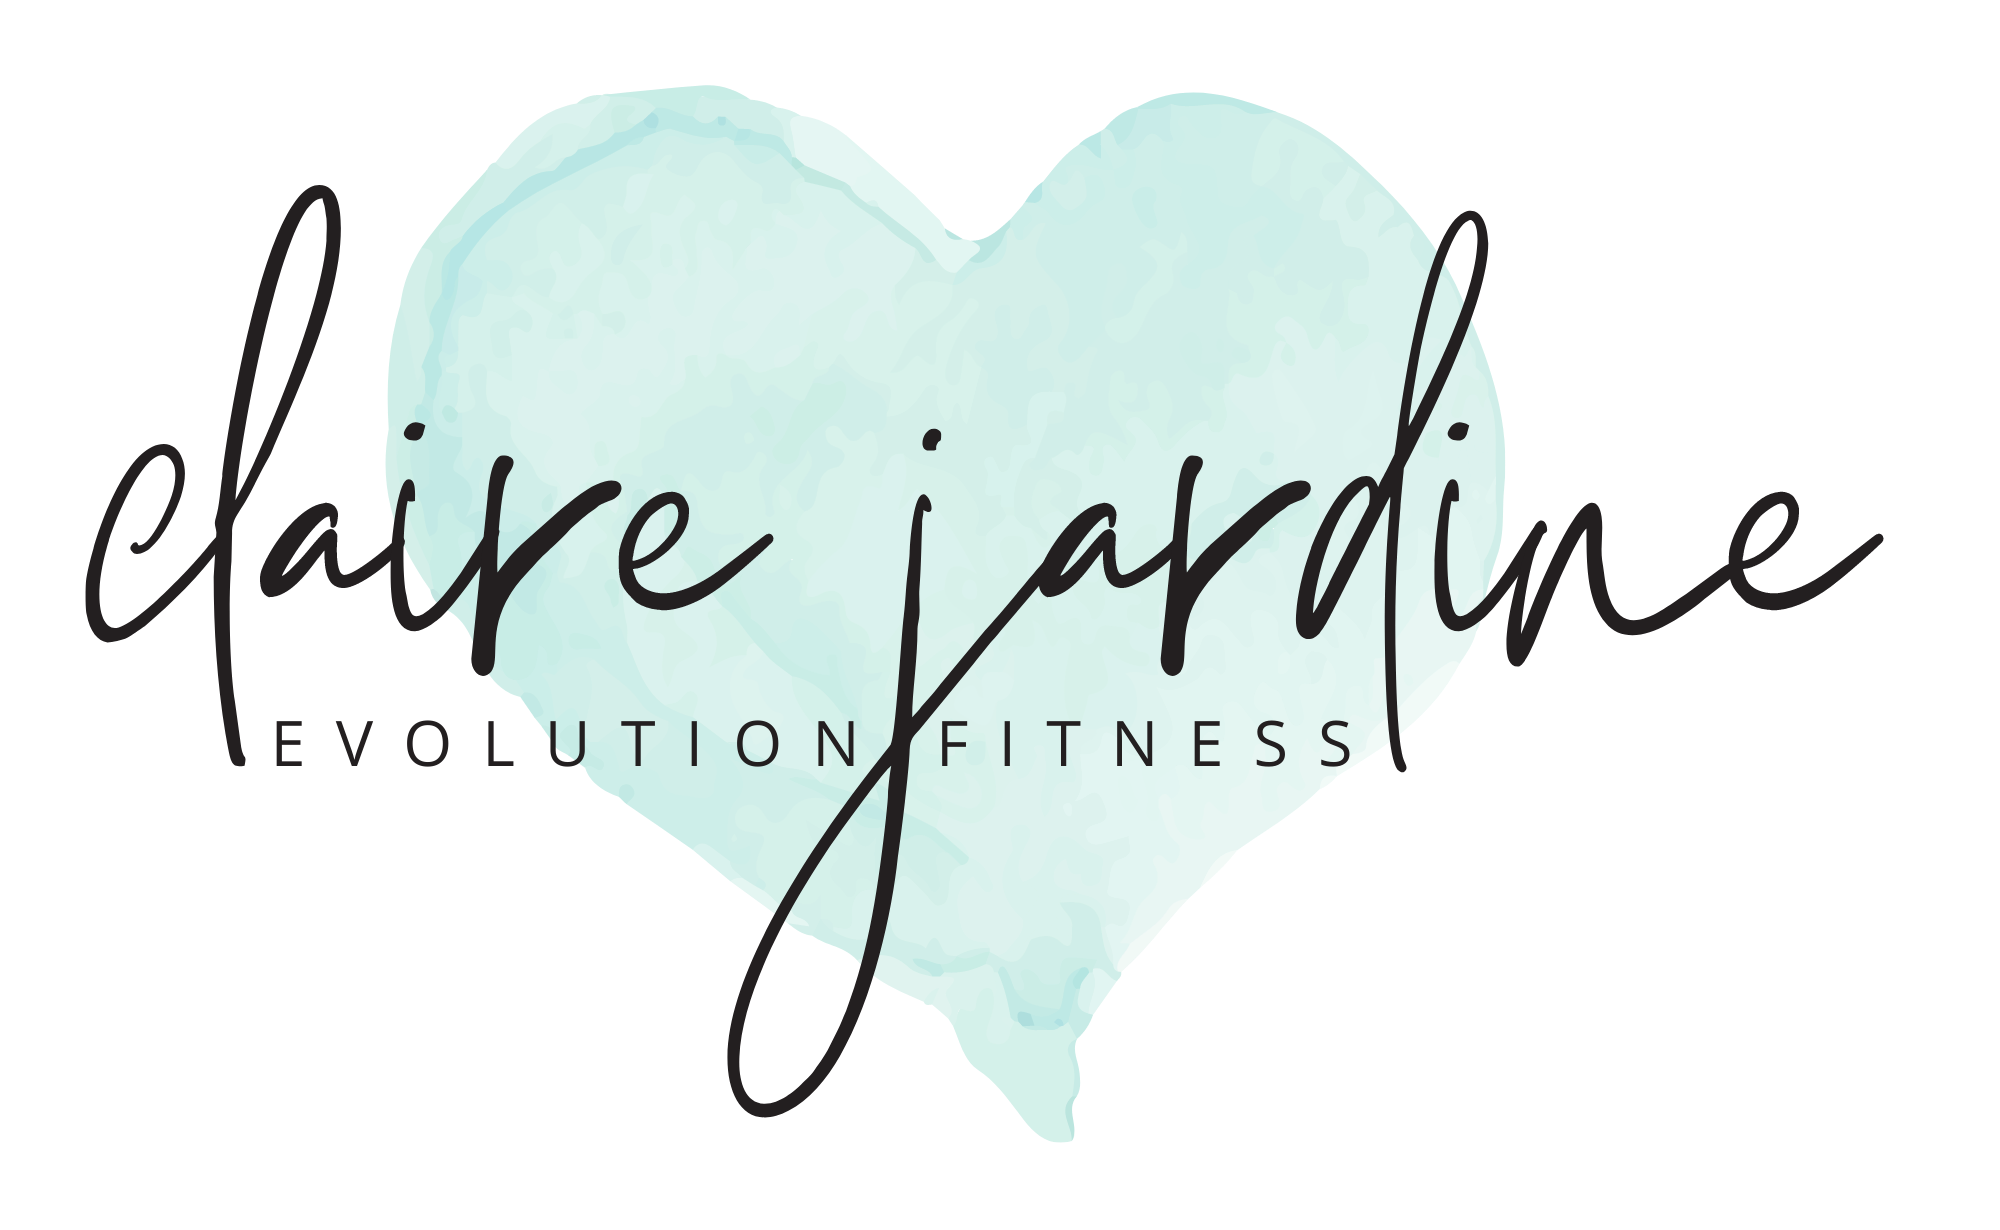 Claire Jardine Evolution Fitness